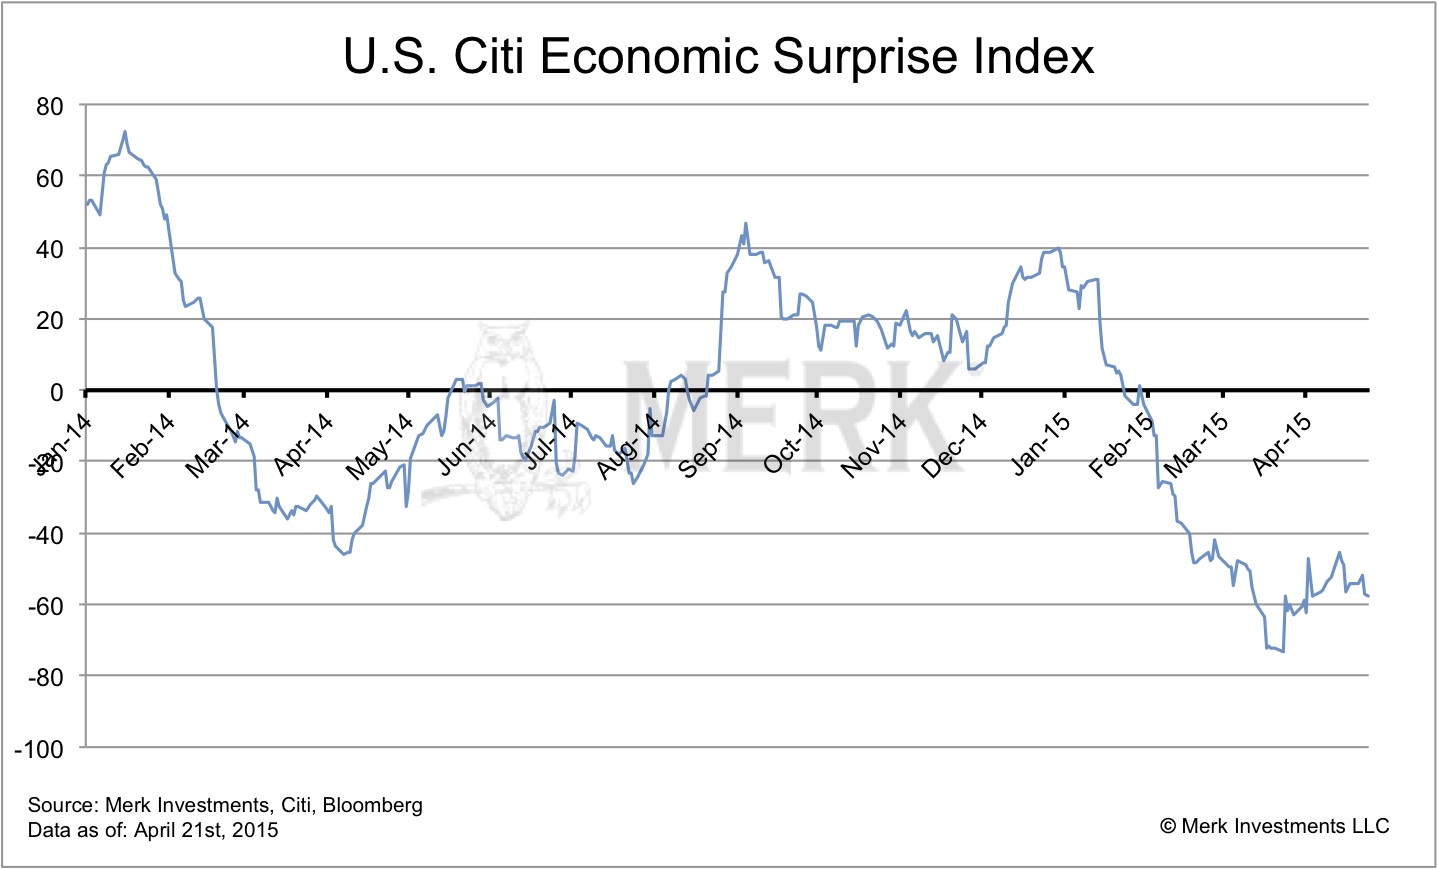 Citi Economic Surprise Index: U.S.